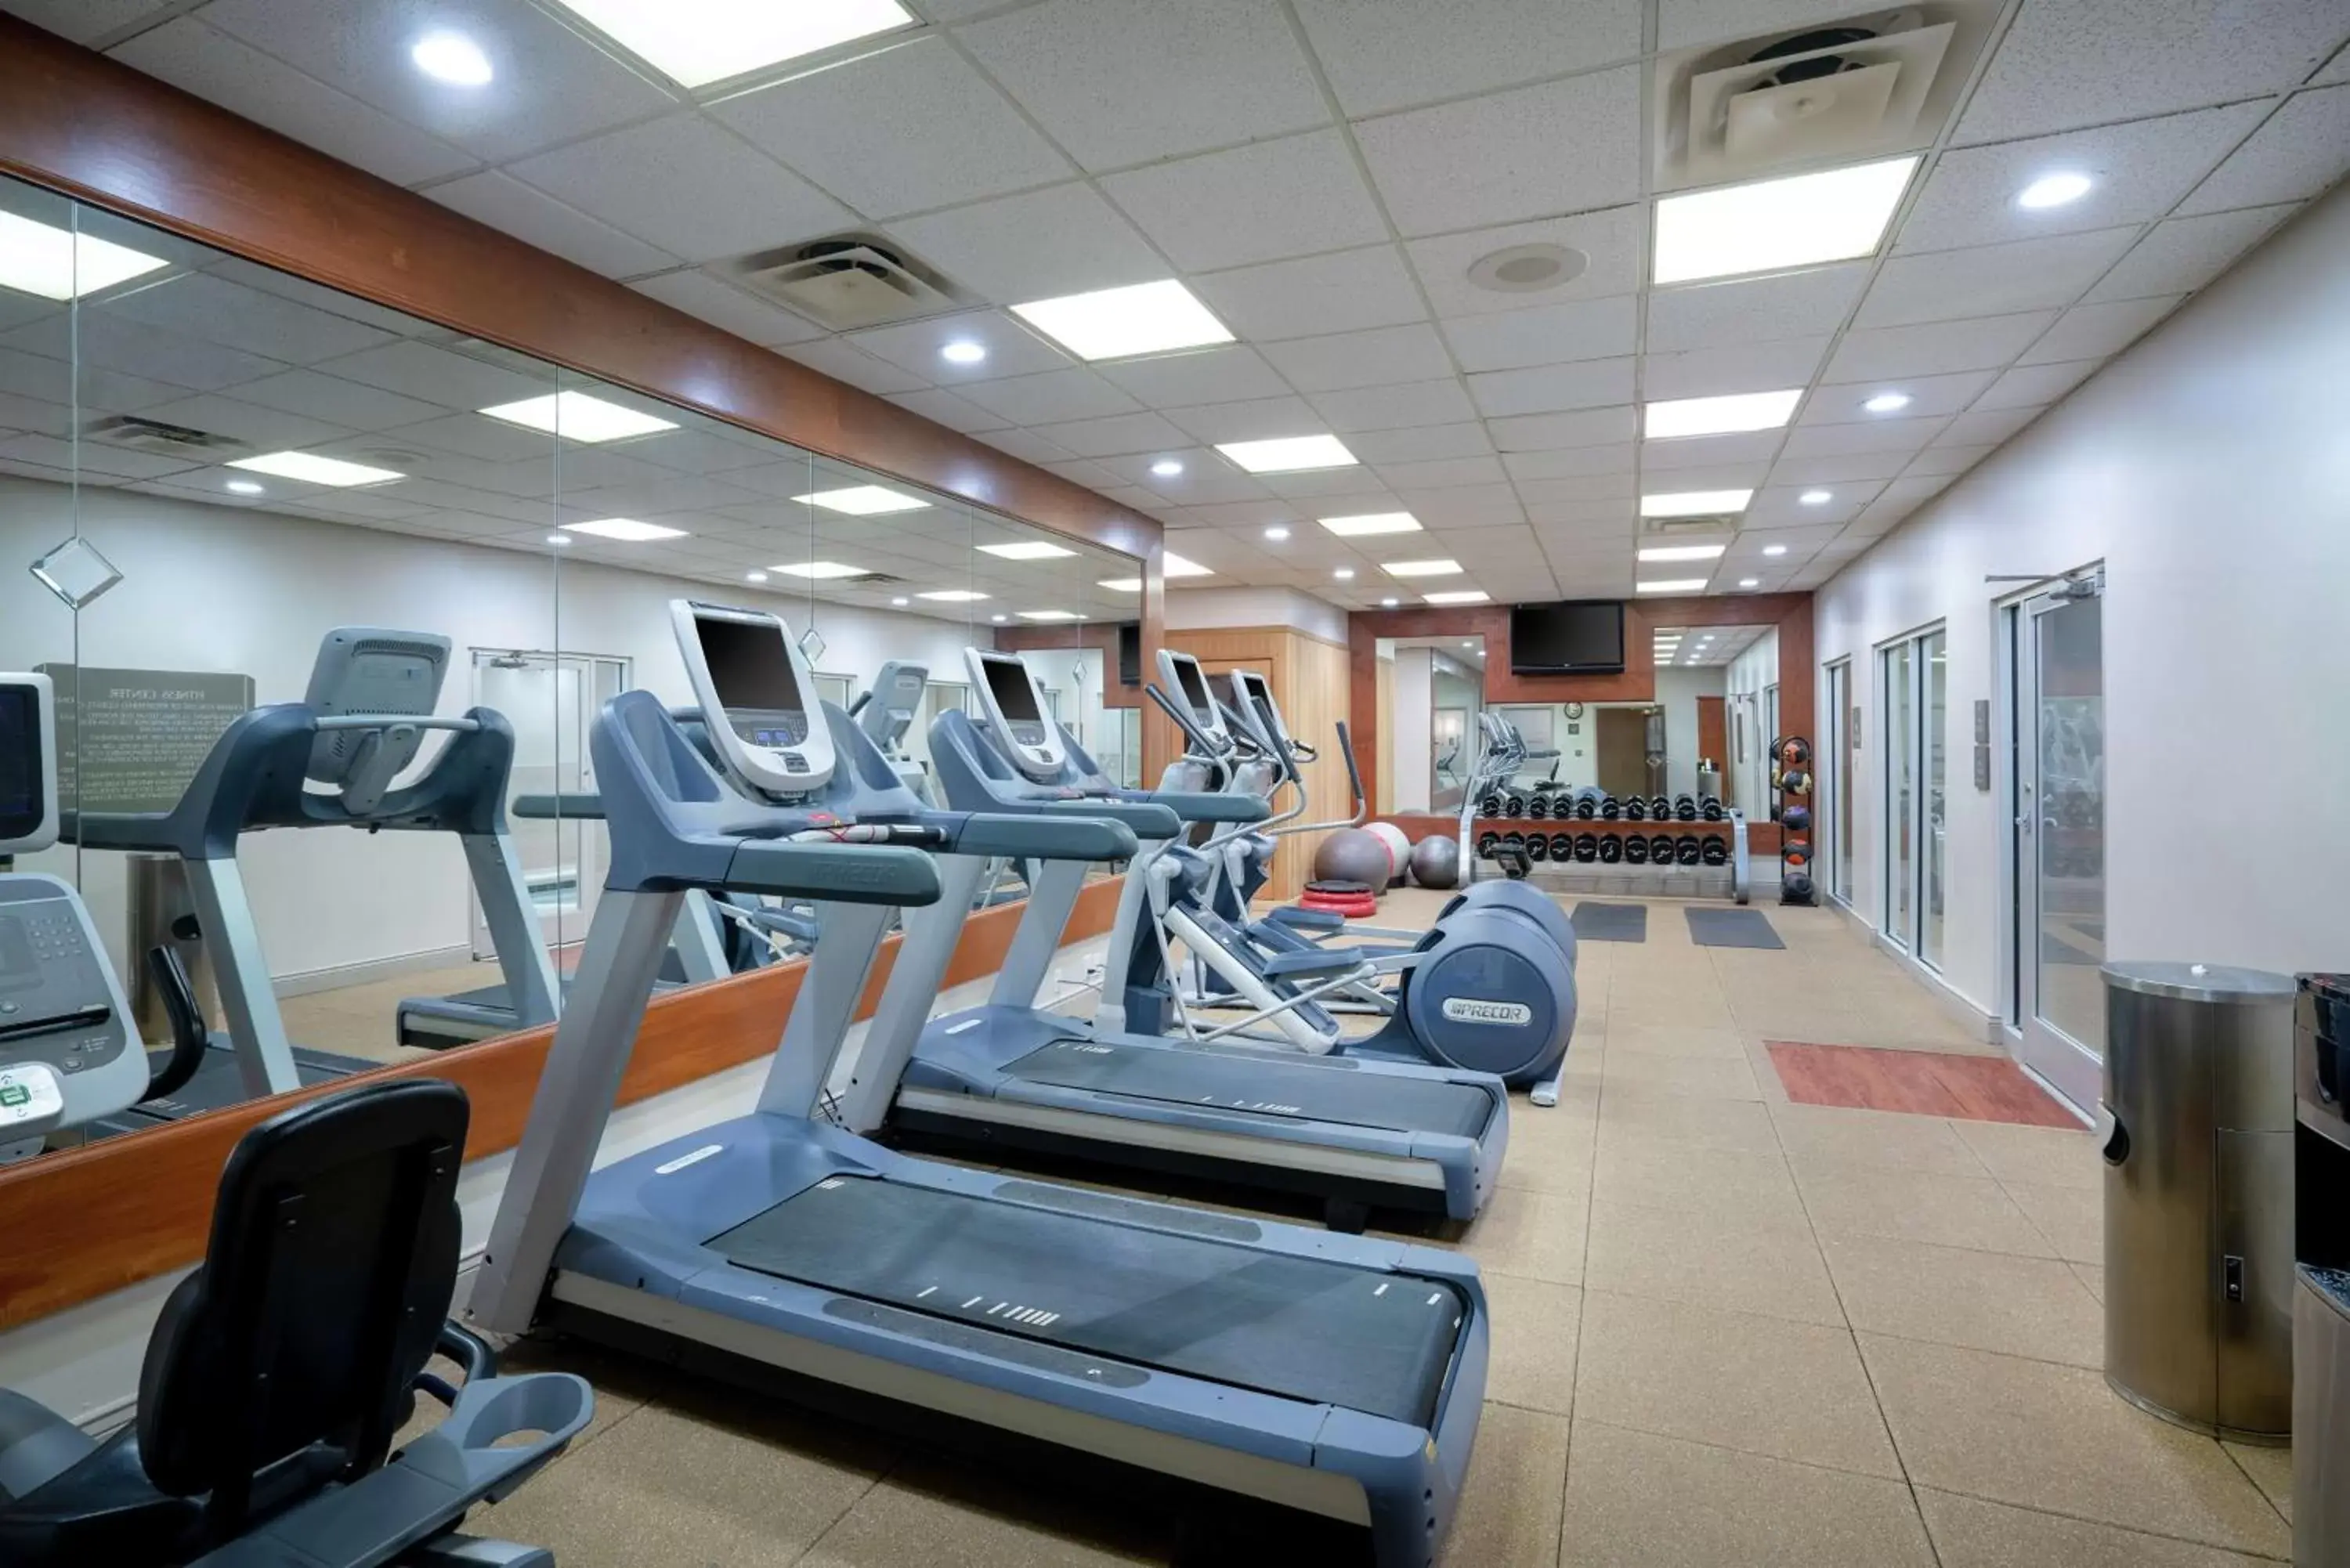 Fitness centre/facilities, Fitness Center/Facilities in Embassy Suites Nashville - at Vanderbilt